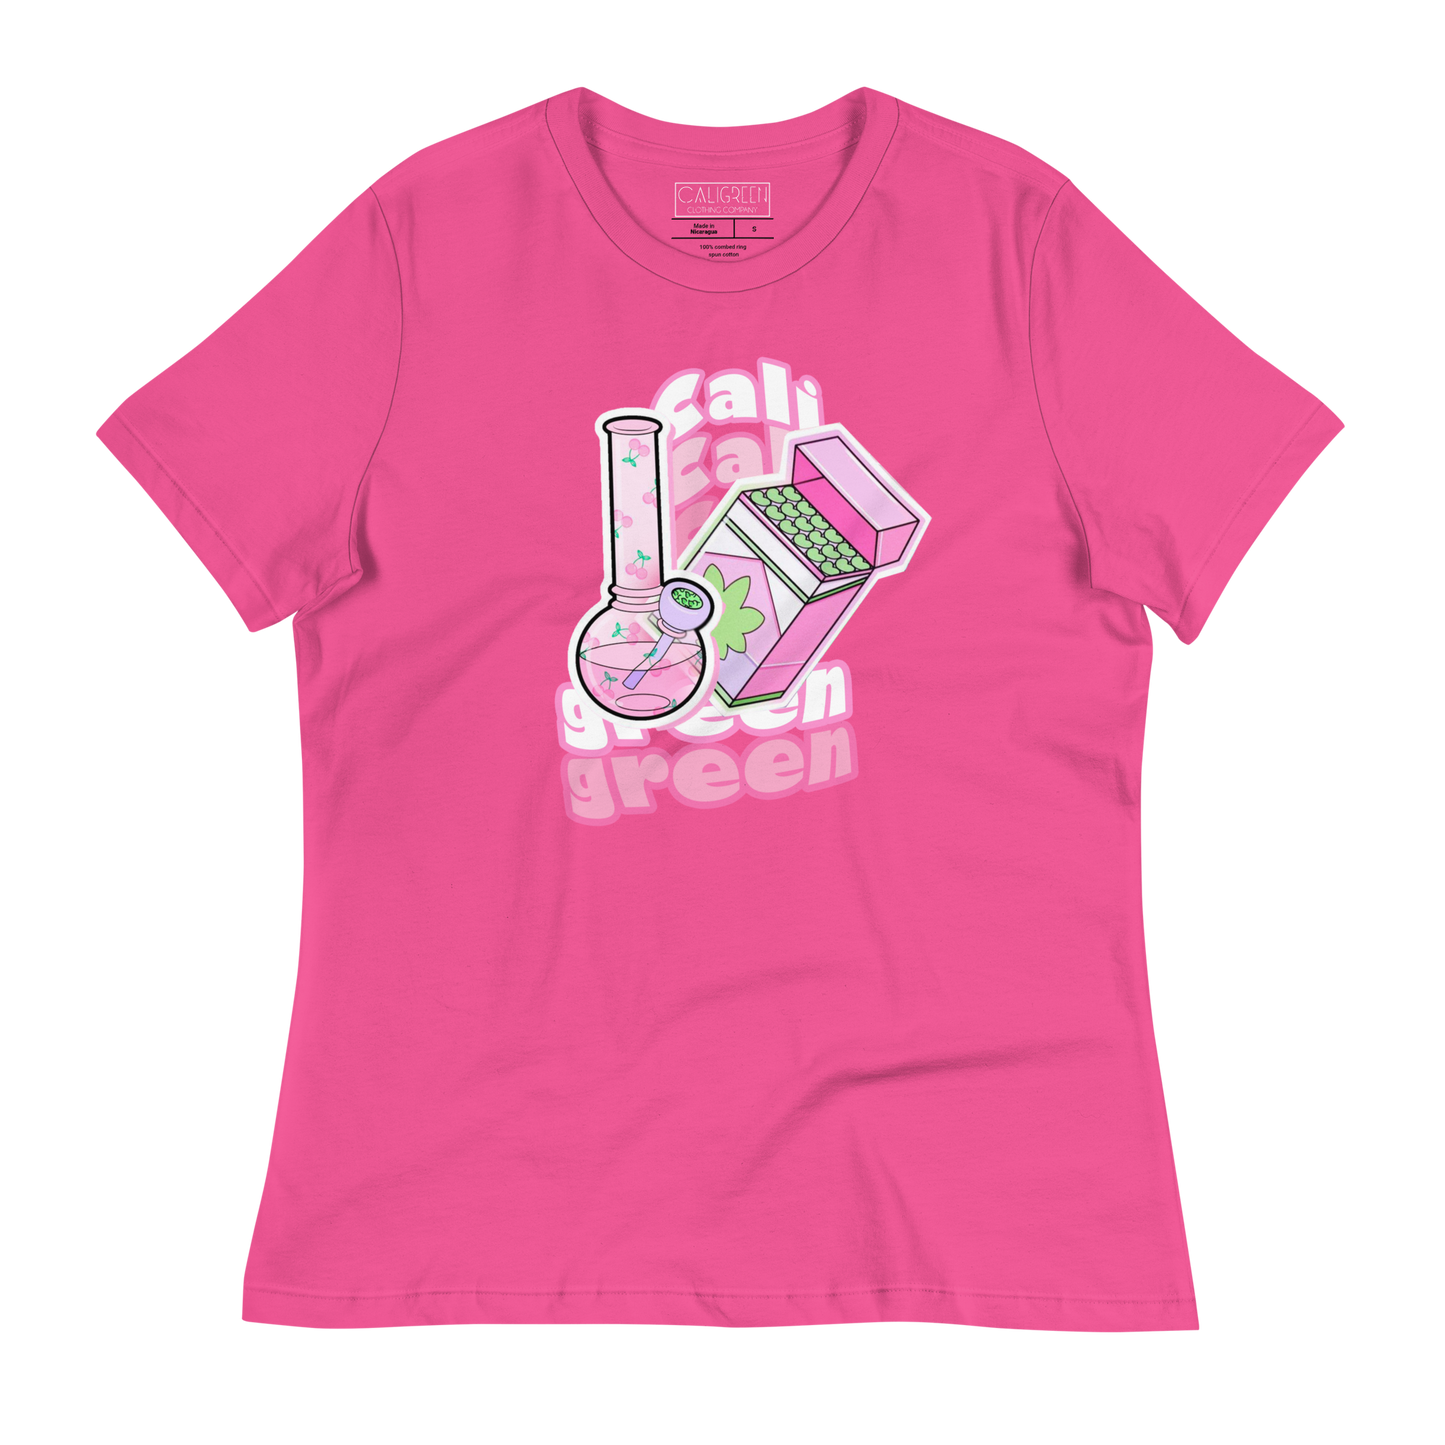 Pink Dreamz Women's T-Shirt